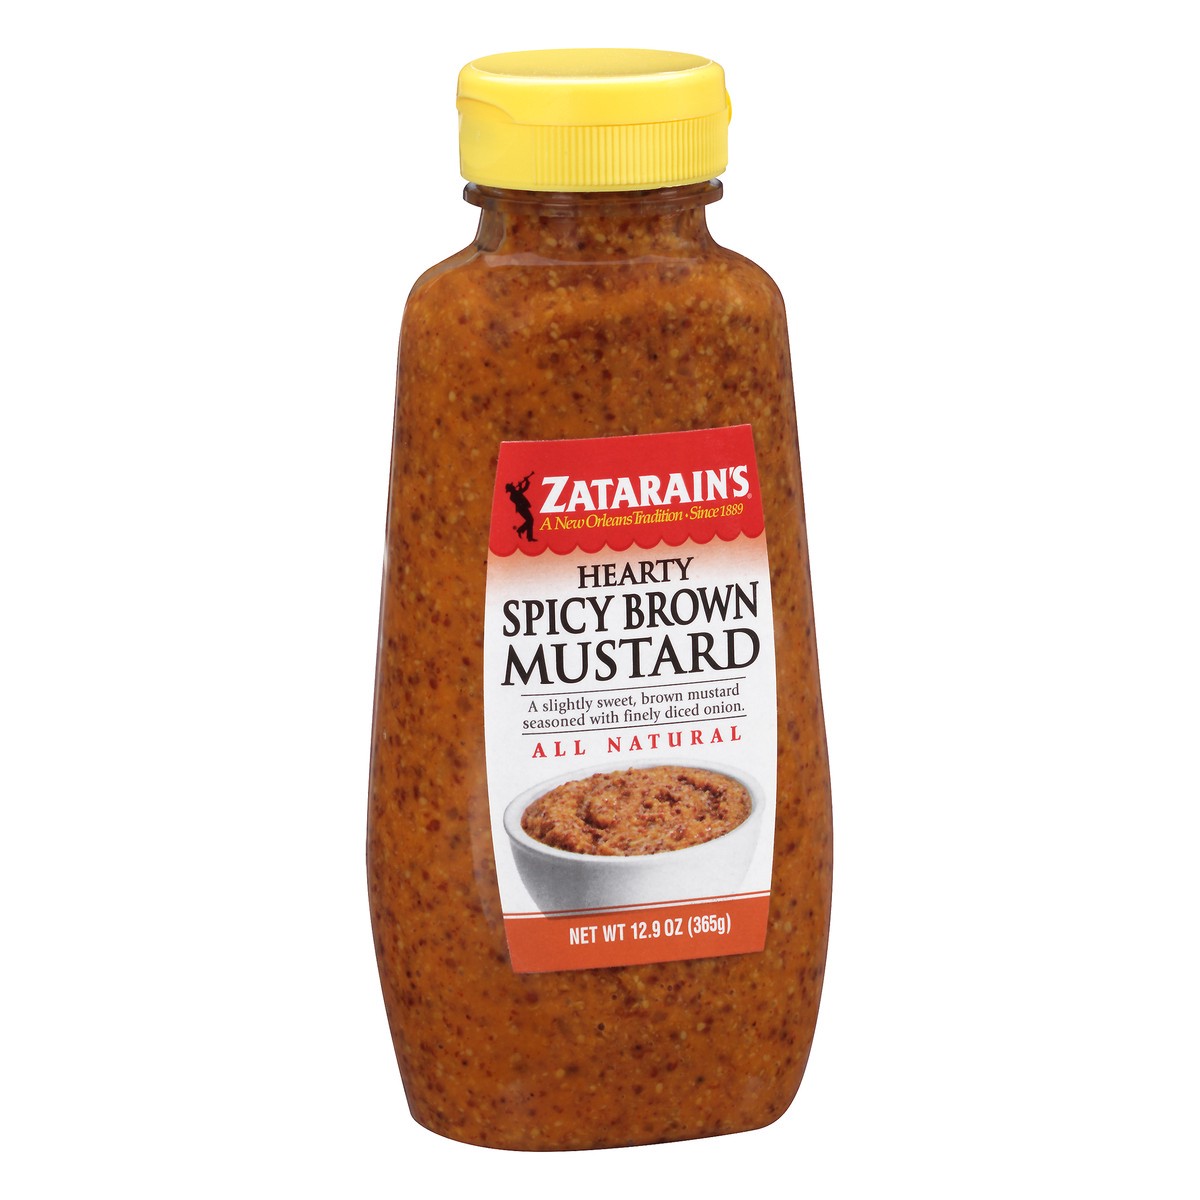 slide 2 of 10, Zatarain's Mustard Hearty Spicy Brown Mustard, 12.9 Oz, 12.9 oz